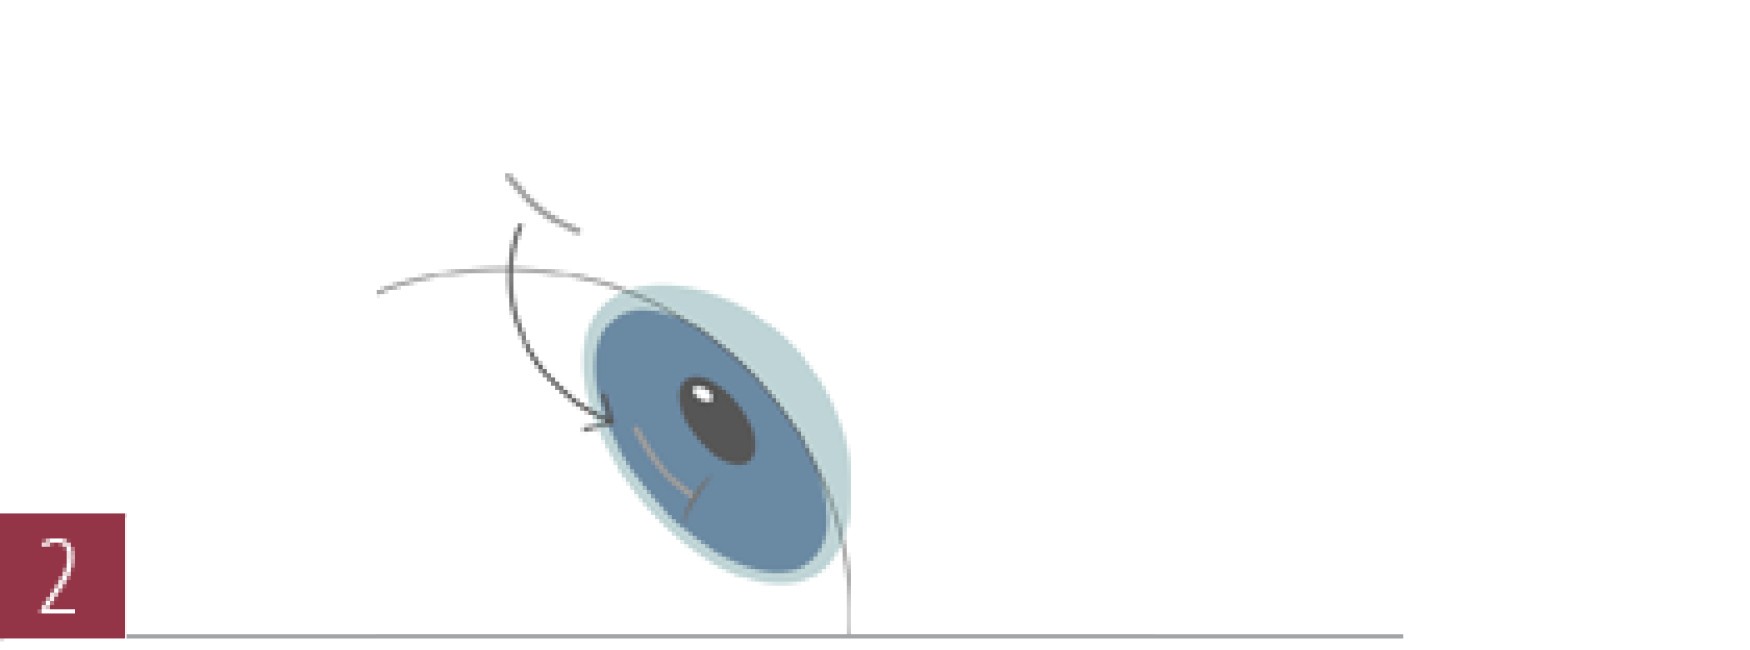 圆锥角膜手术